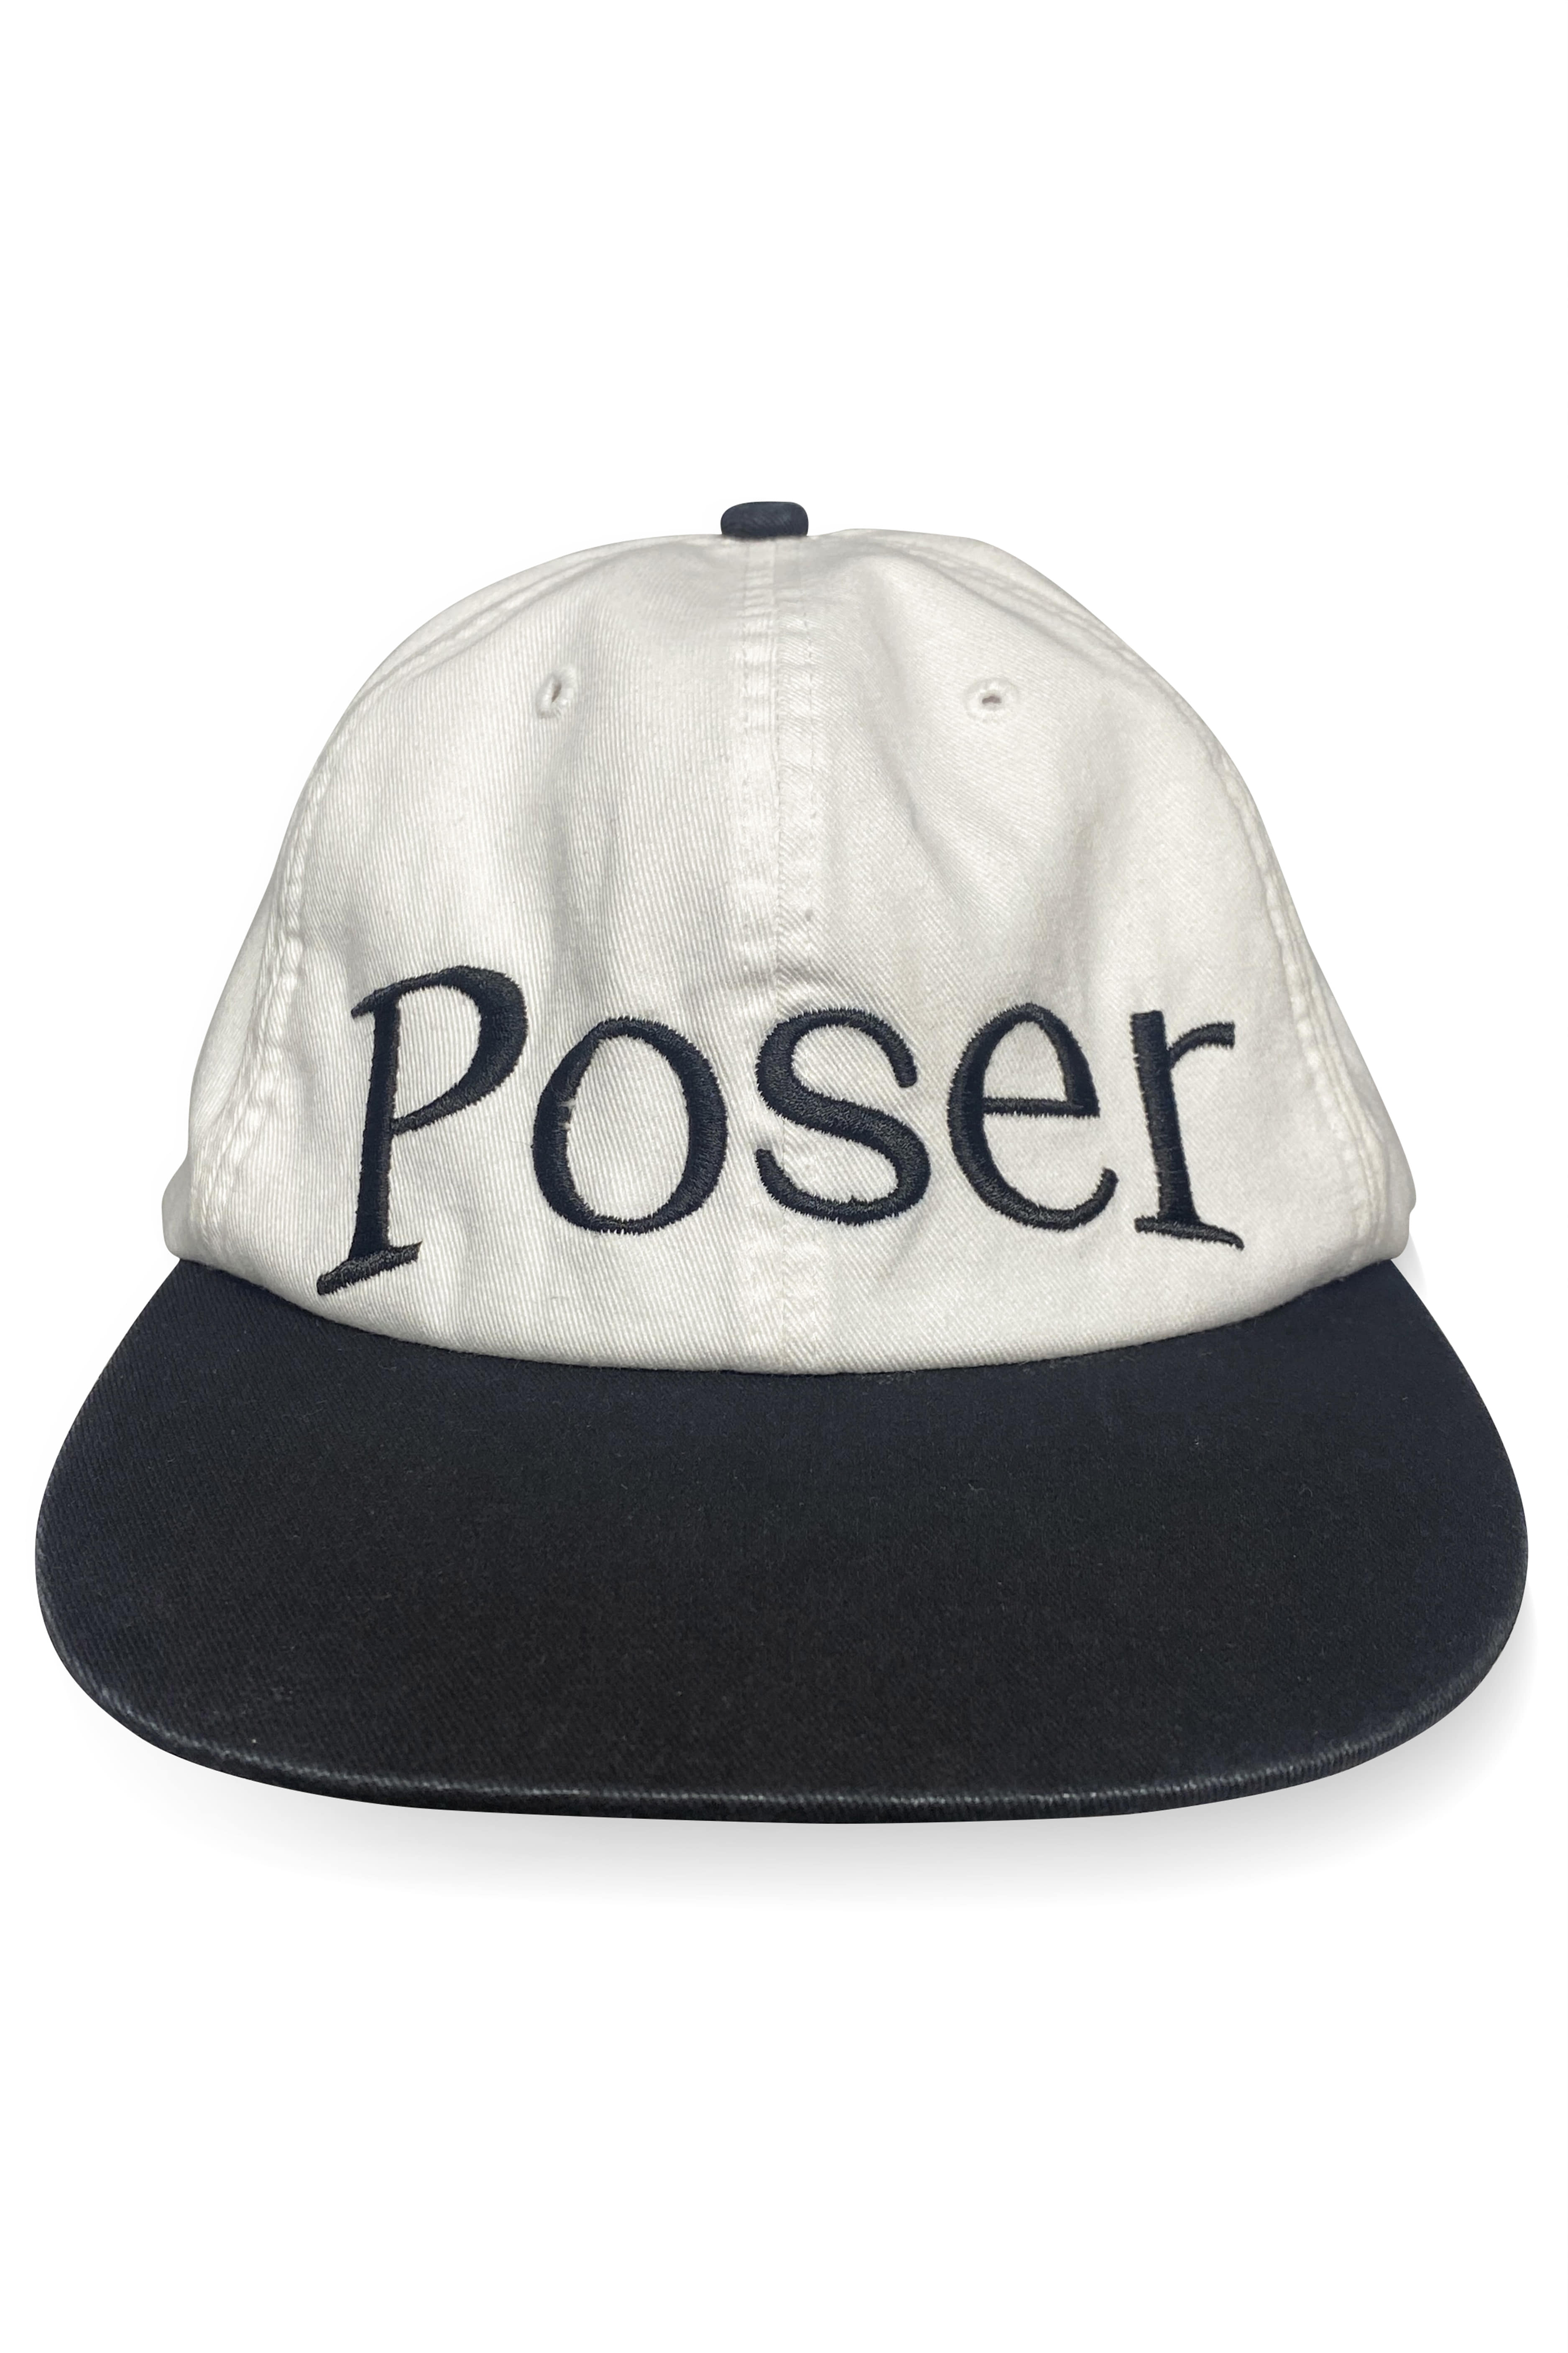 &#039;Poser&#039; vintage cap/White&amp;Black